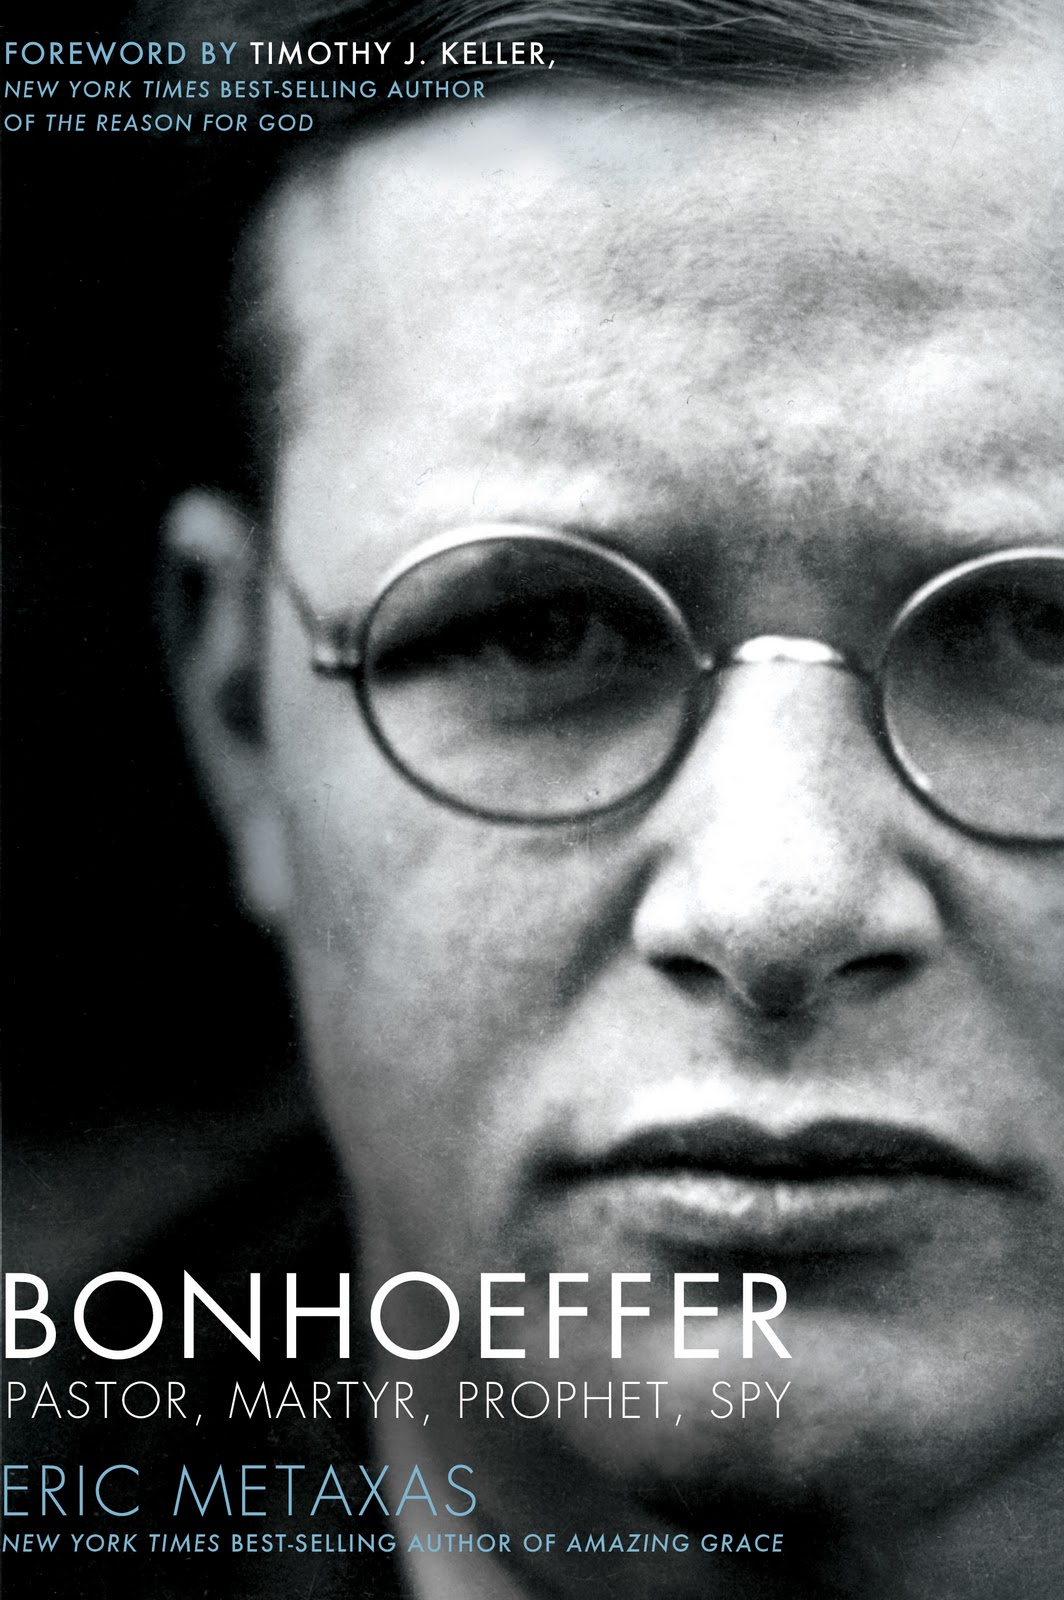 Quotes On Discipleship Bonhoeffer. QuotesGram